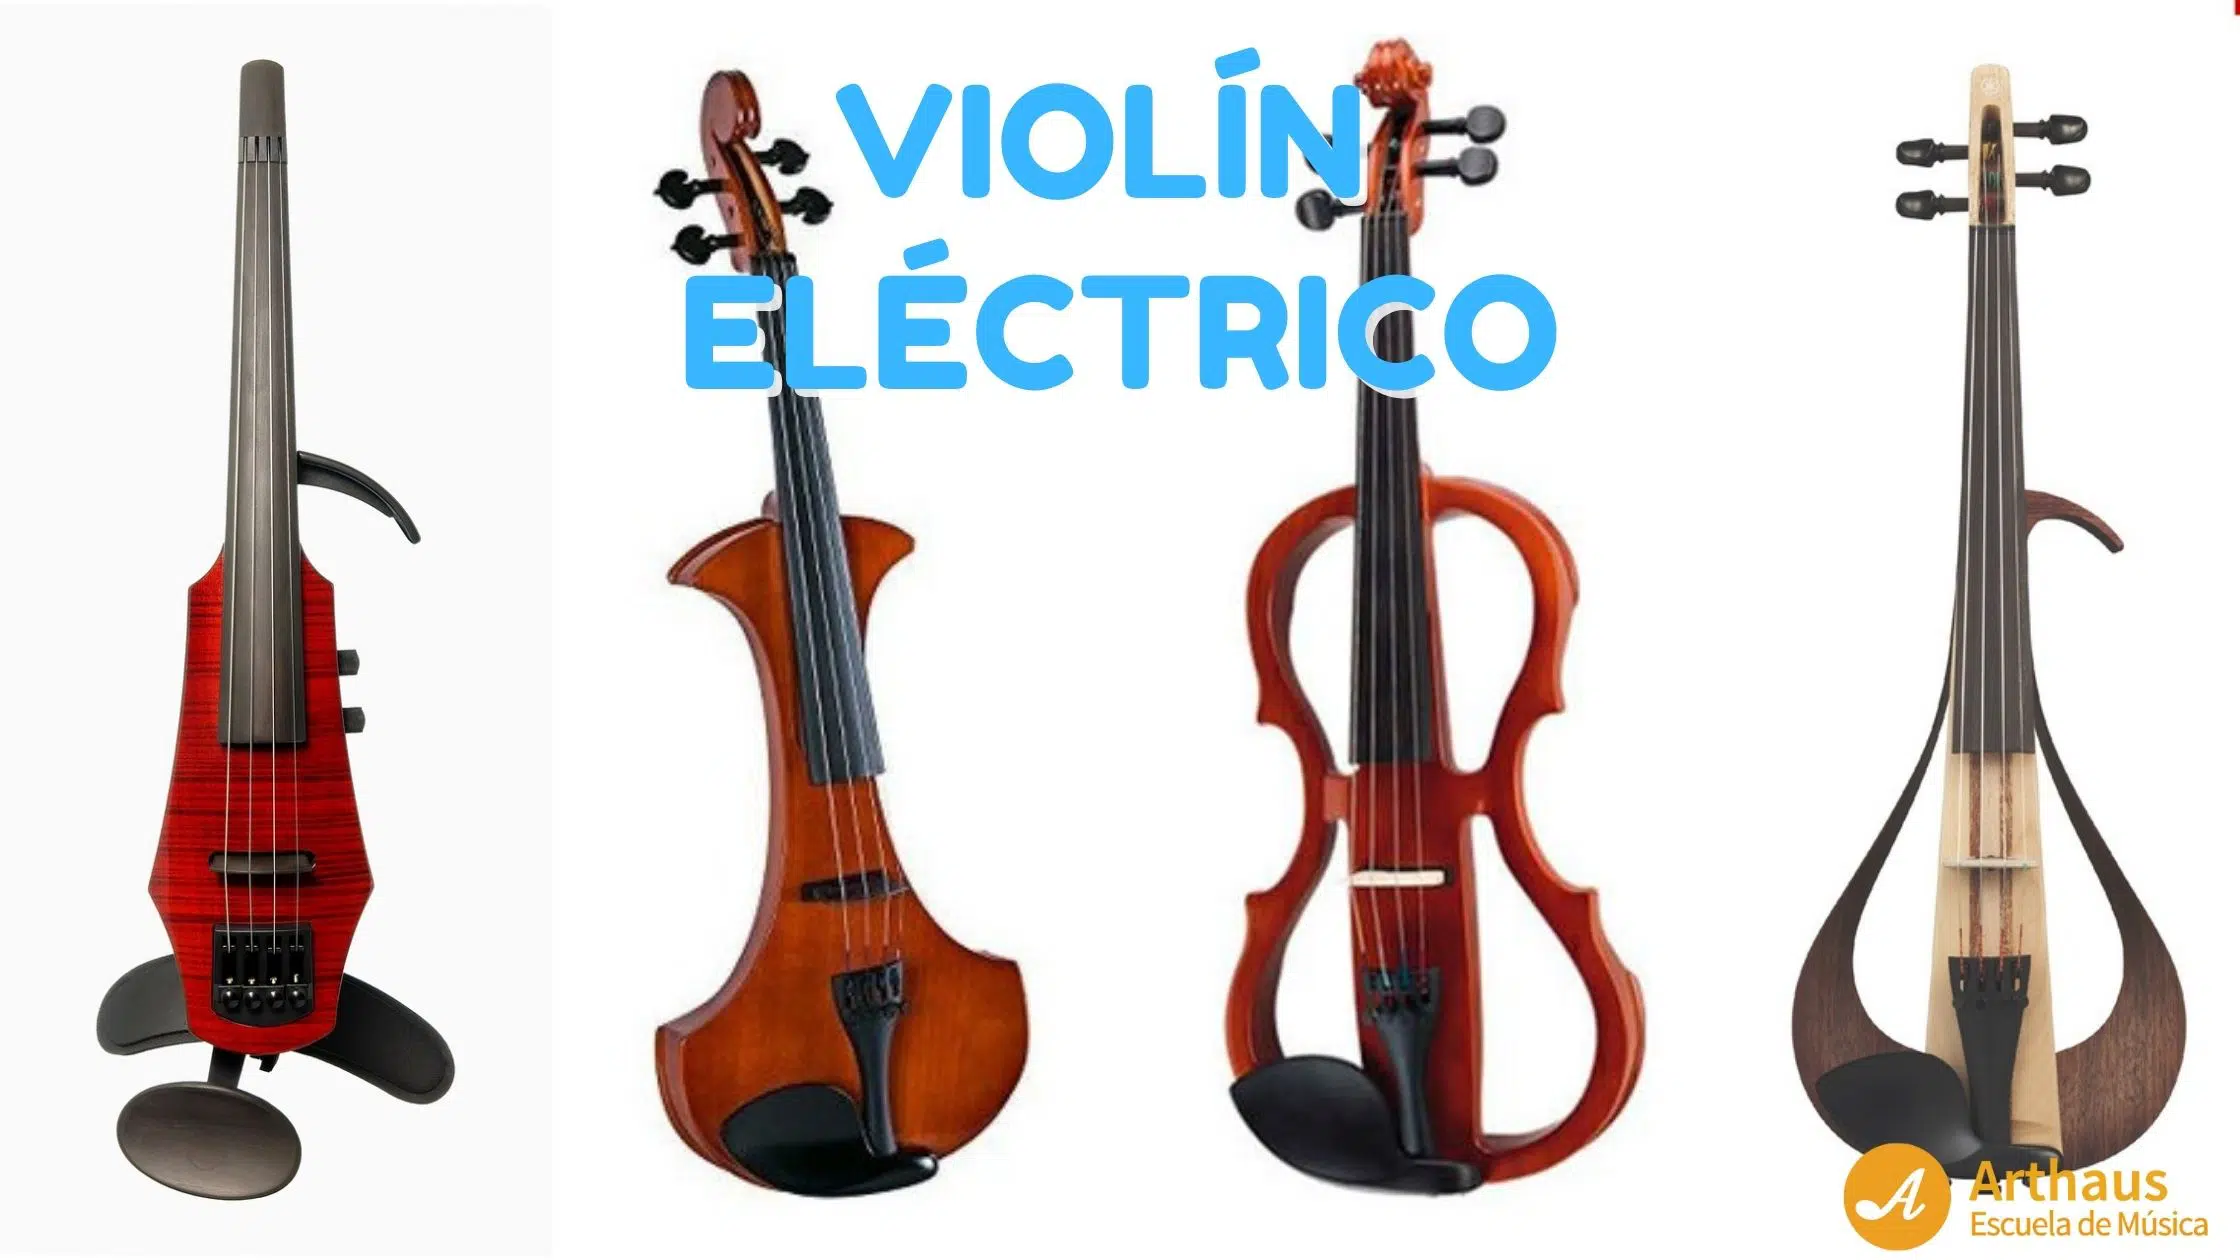 violines-electricos